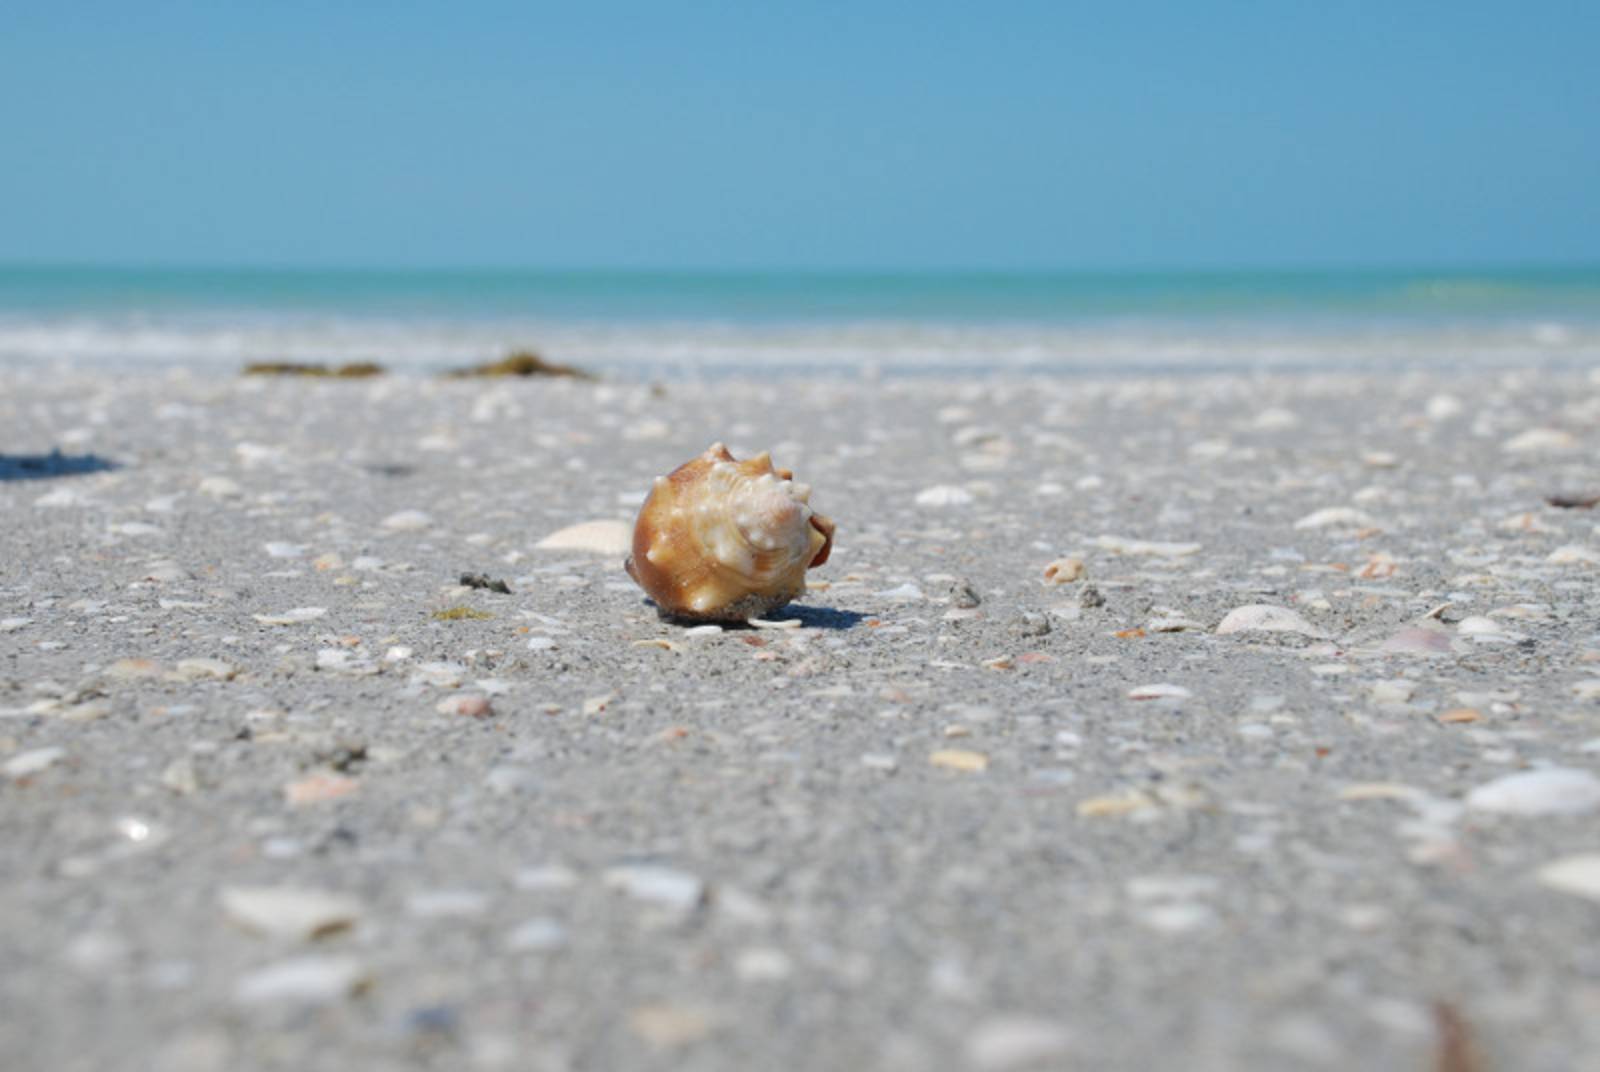 Nahaufname einer Muschel am Strand, im Hintergrund grünliches Meer und blauer Himmel